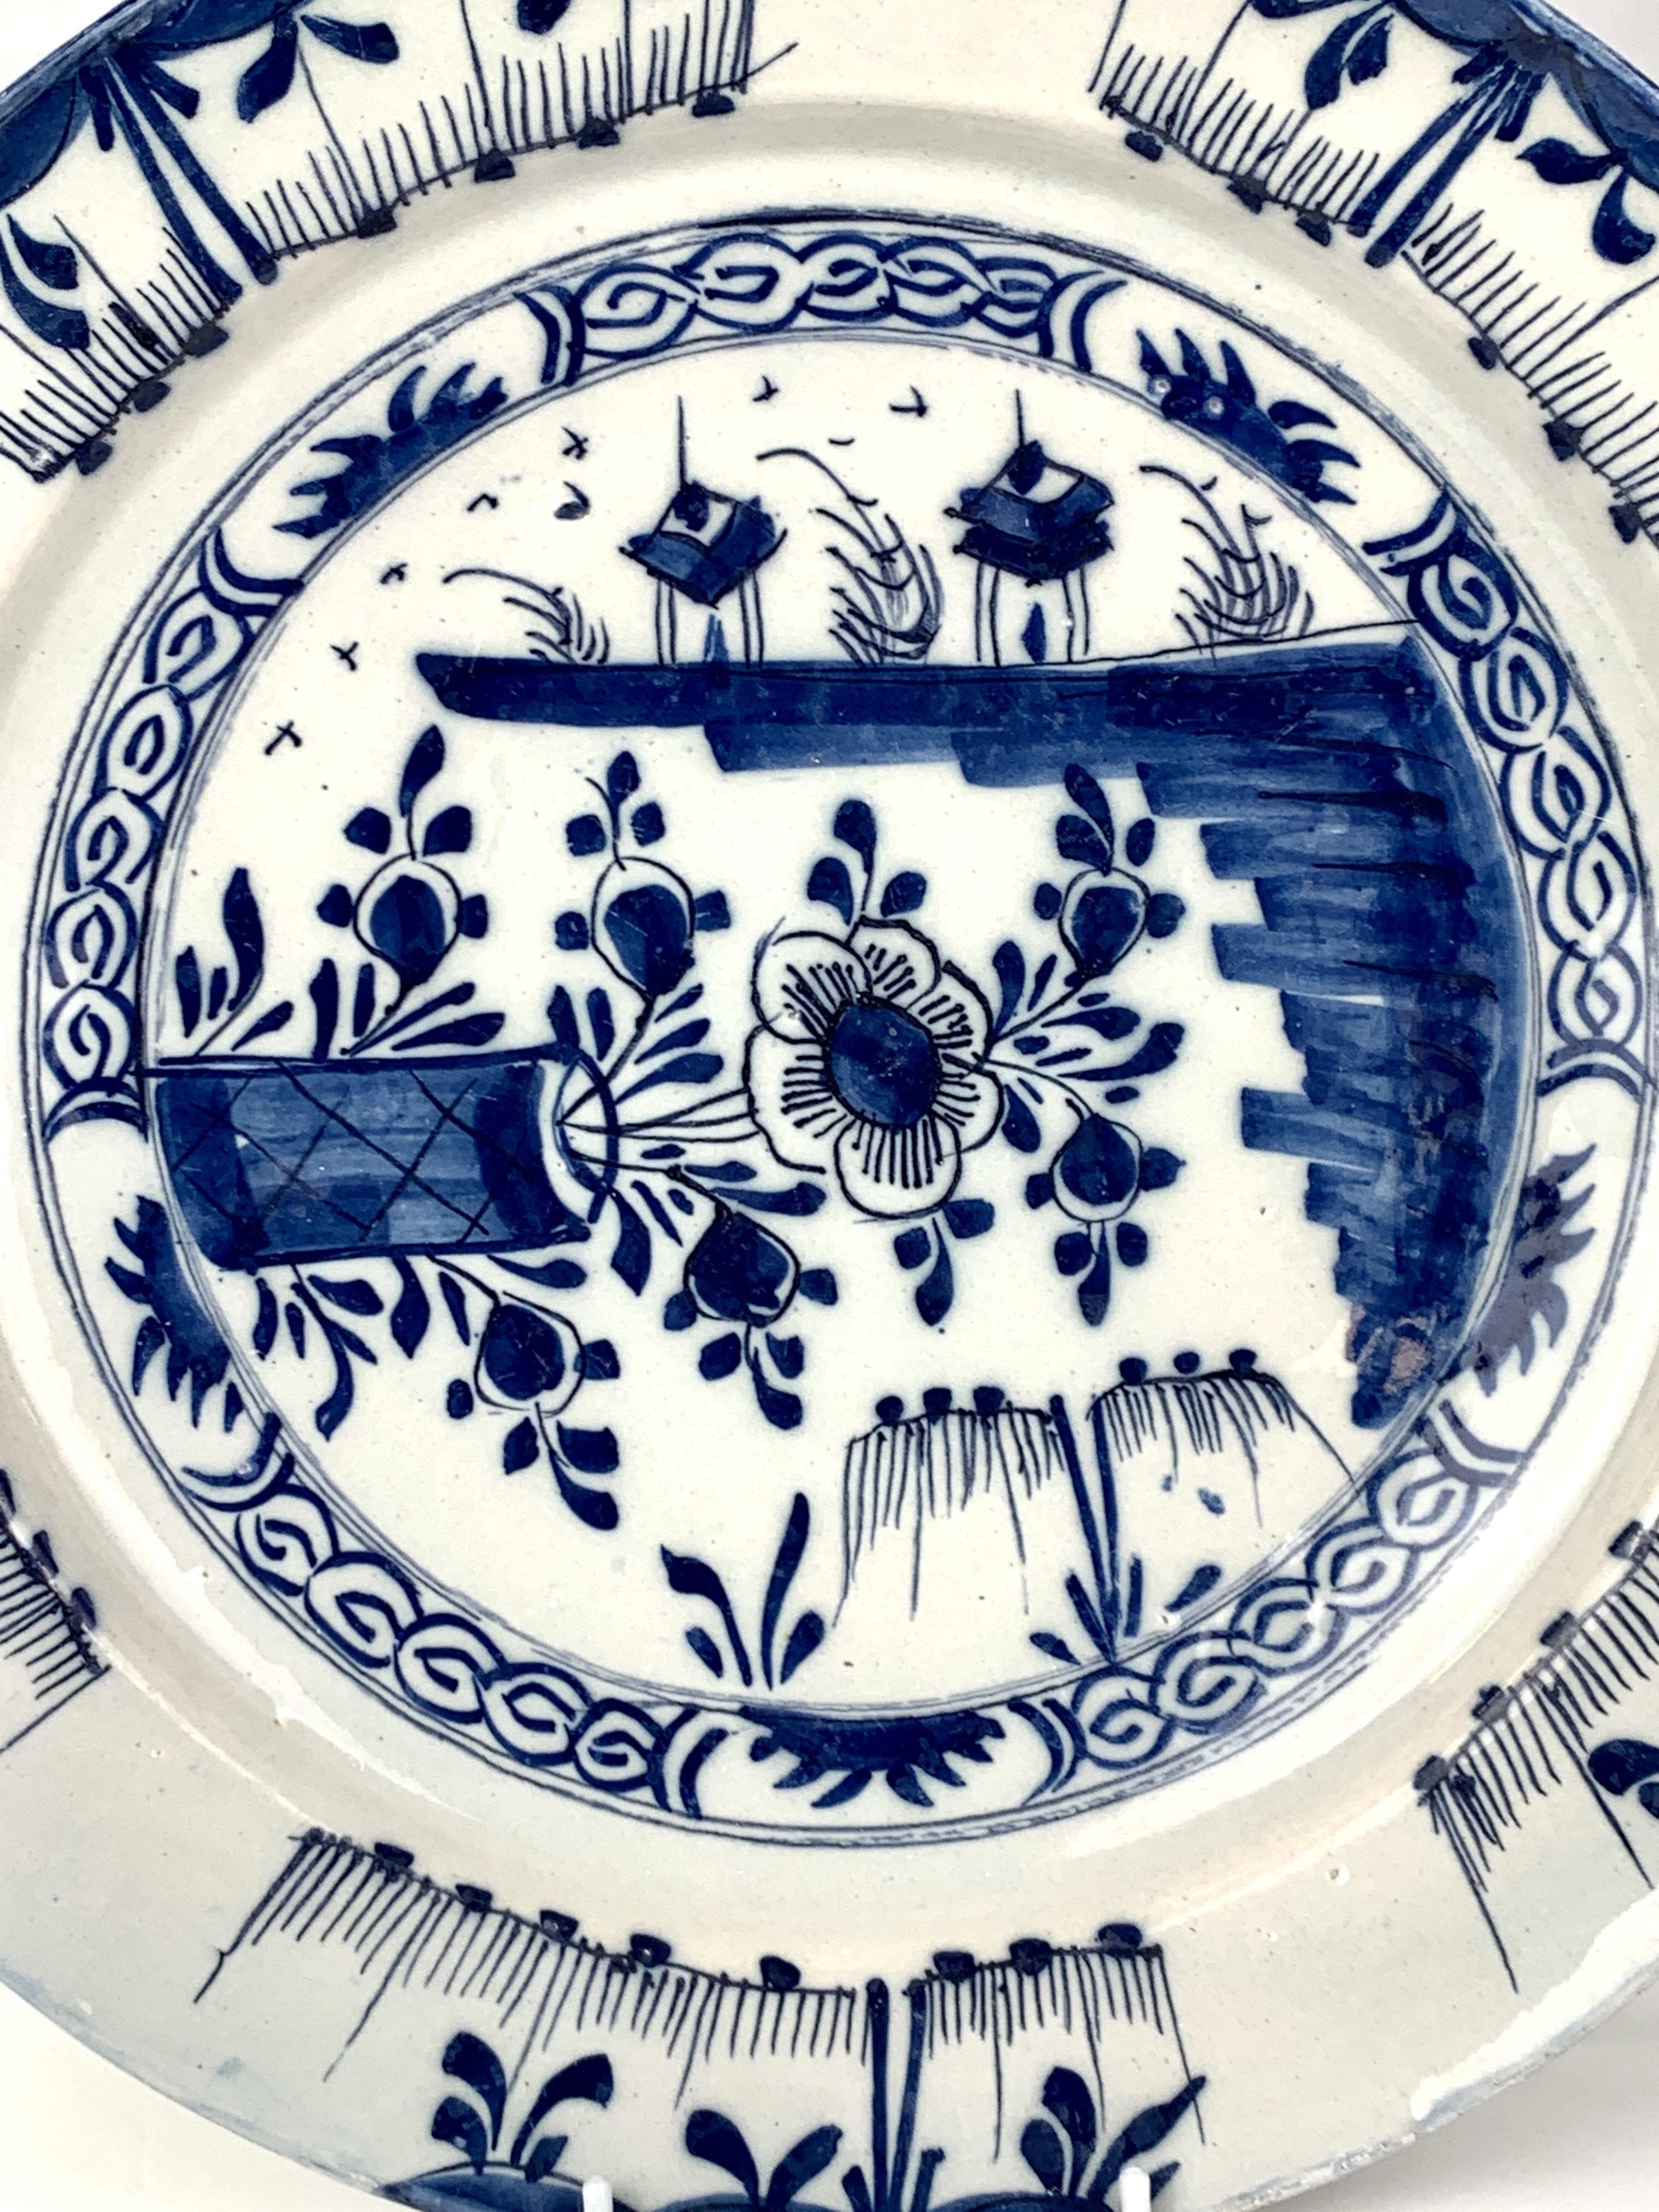 Dieses blau-weiße holländische Delft-Geschirr zeigt eine Chinoiserie-Szene in einem schönen naiven Stil.
Die Chinoiserie-Szene in der Mitte des Ladegeräts umfasst drei einzigartige Blickwinkel.
Auf der einen Seite sehen wir eine Blume und Knospen